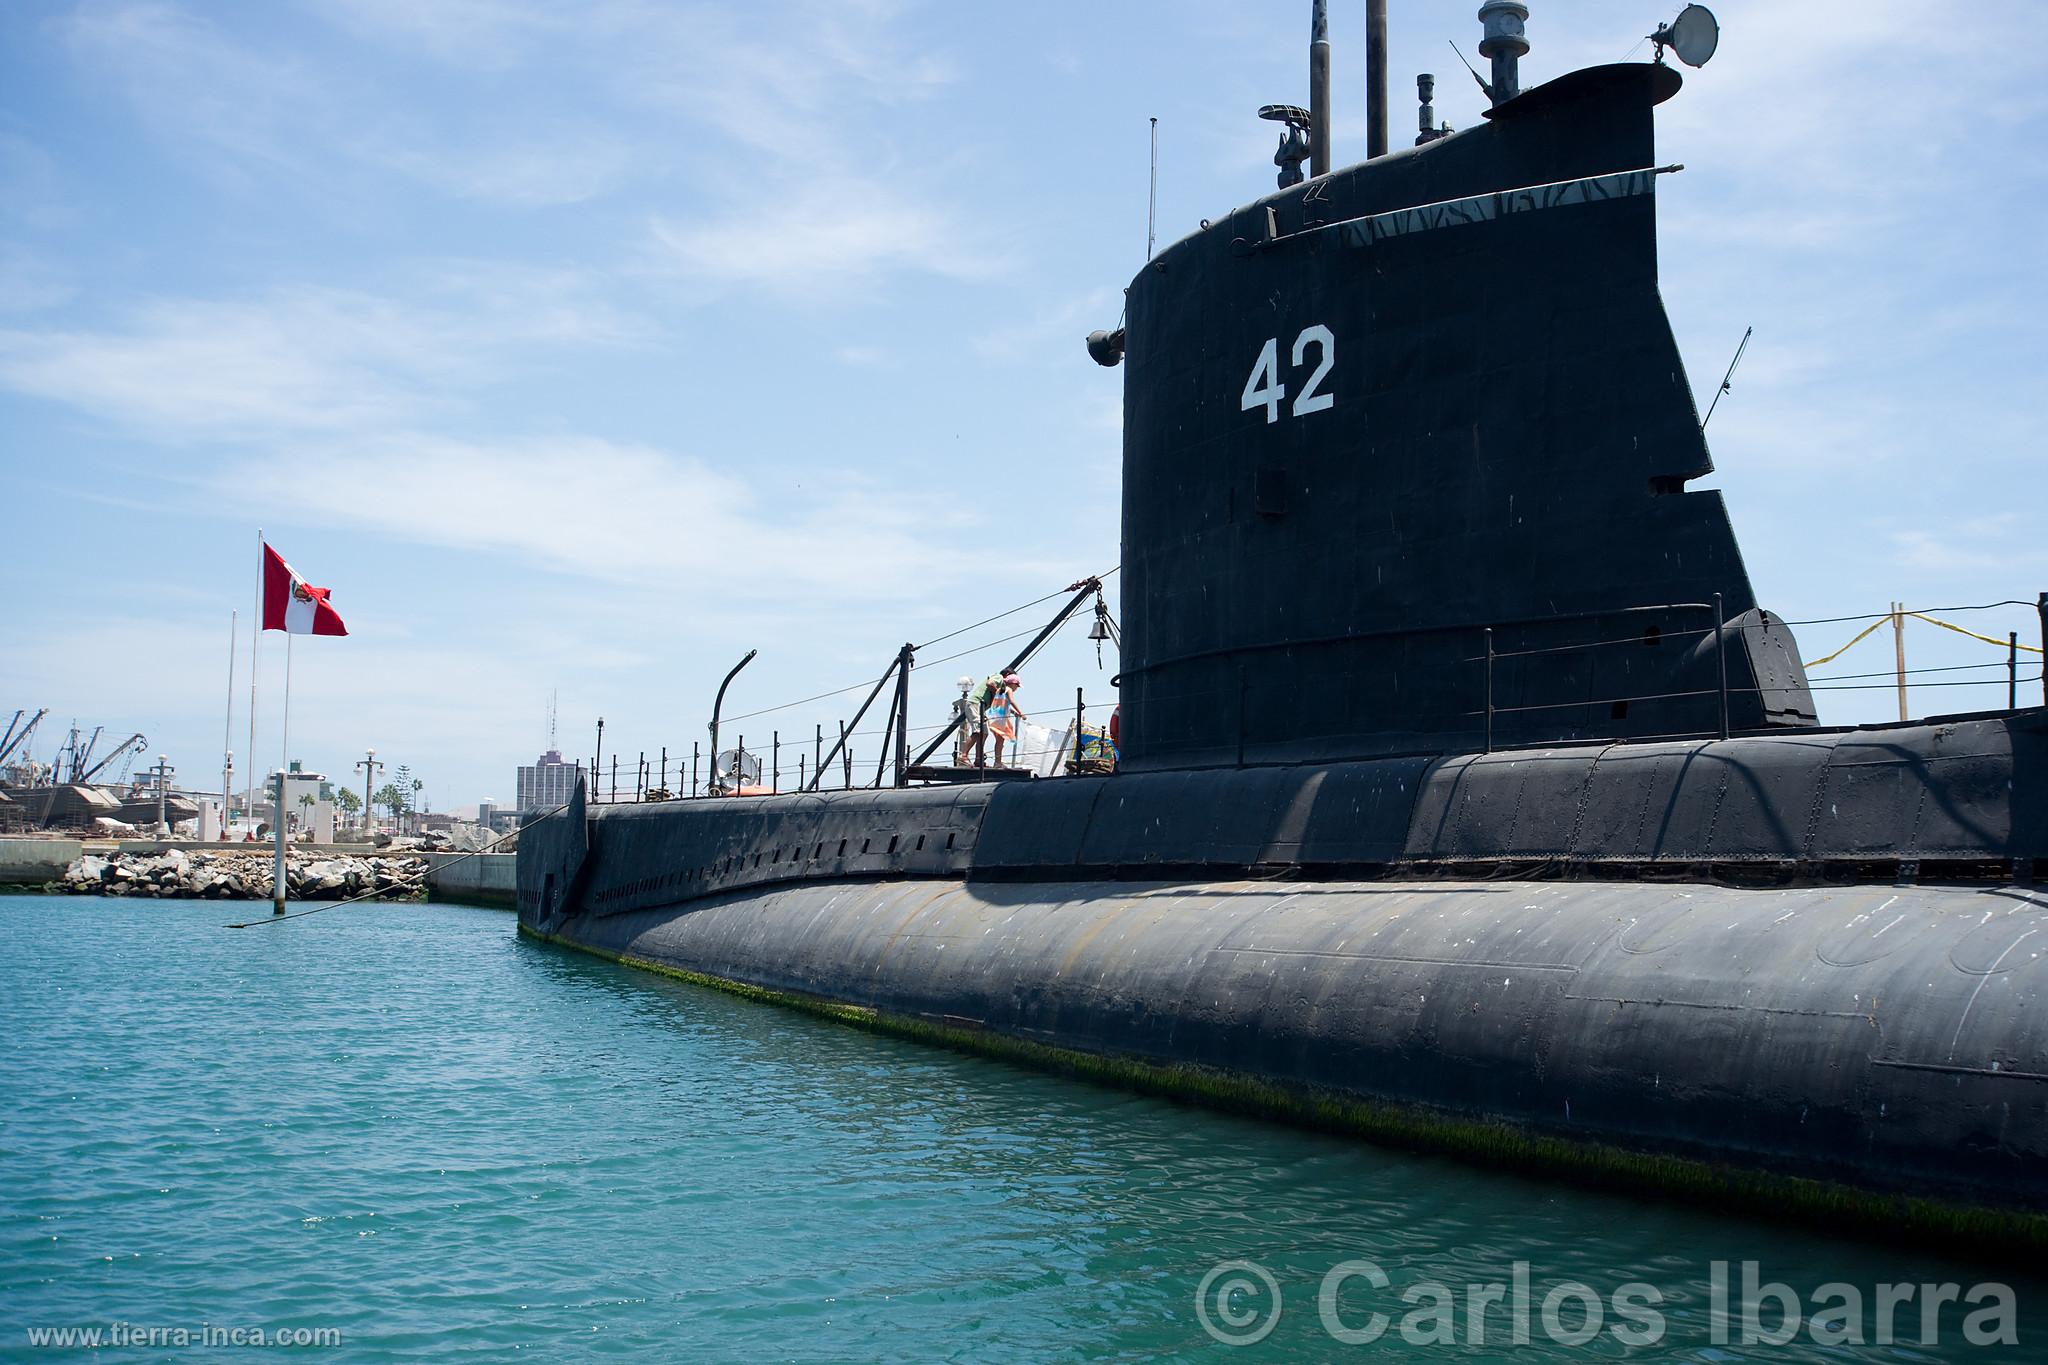 Museo de Sitio Naval Submarino Abtao, Callao